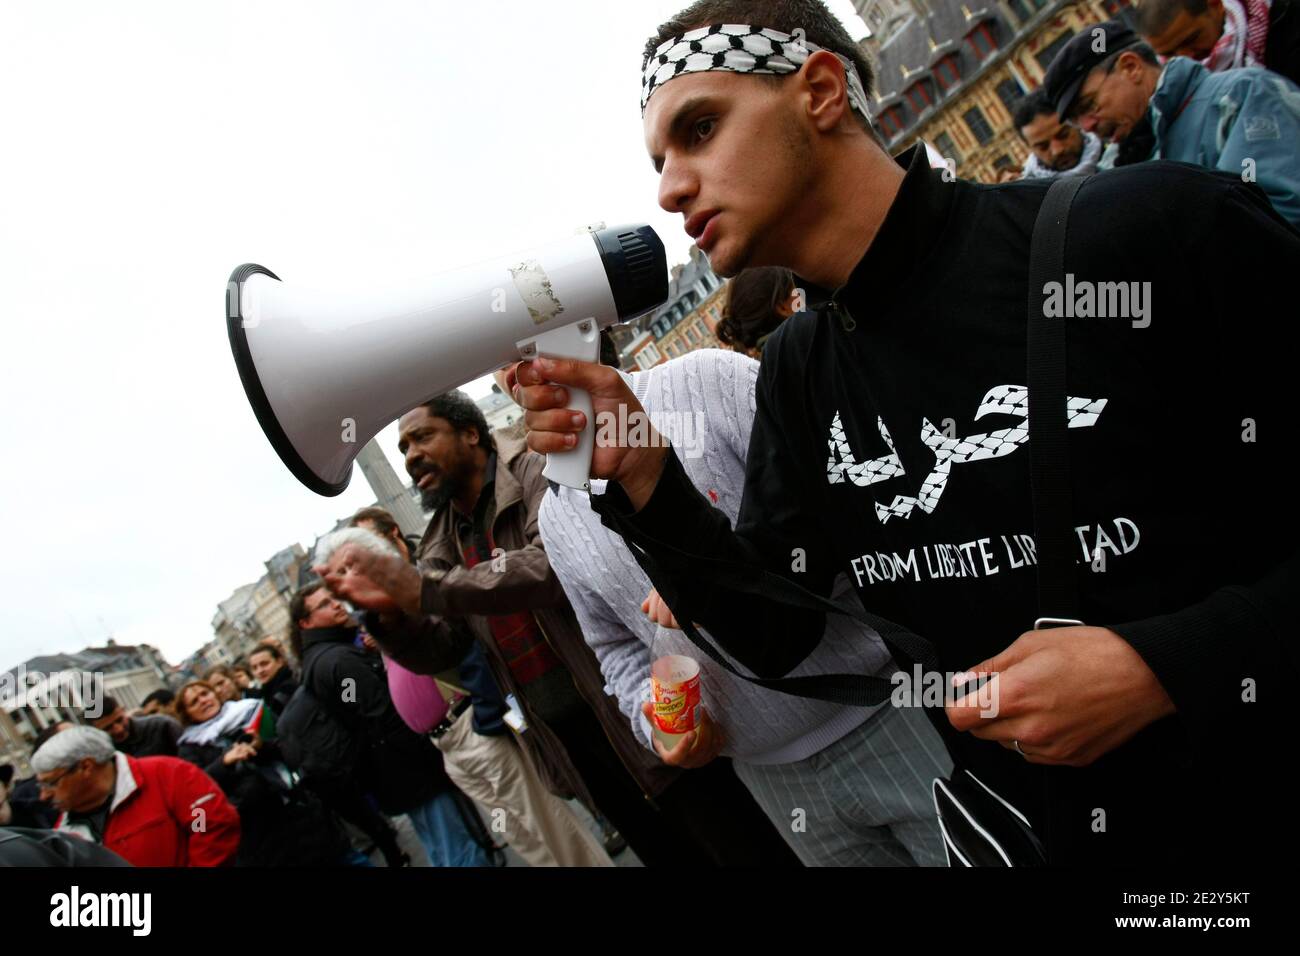 Pro-palästinensische Demonstration in Lille, Nordfrankreich, am 31. Mai 2010. Israelische Marineinfanteristen stürmten am Montag ein türkisches Hilfsschiff nach Gaza und mehrere pro-palästinensische Aktivisten wurden getötet. Foto von Sylvain Lefevre/ABACAPRESS.COM Stockfoto